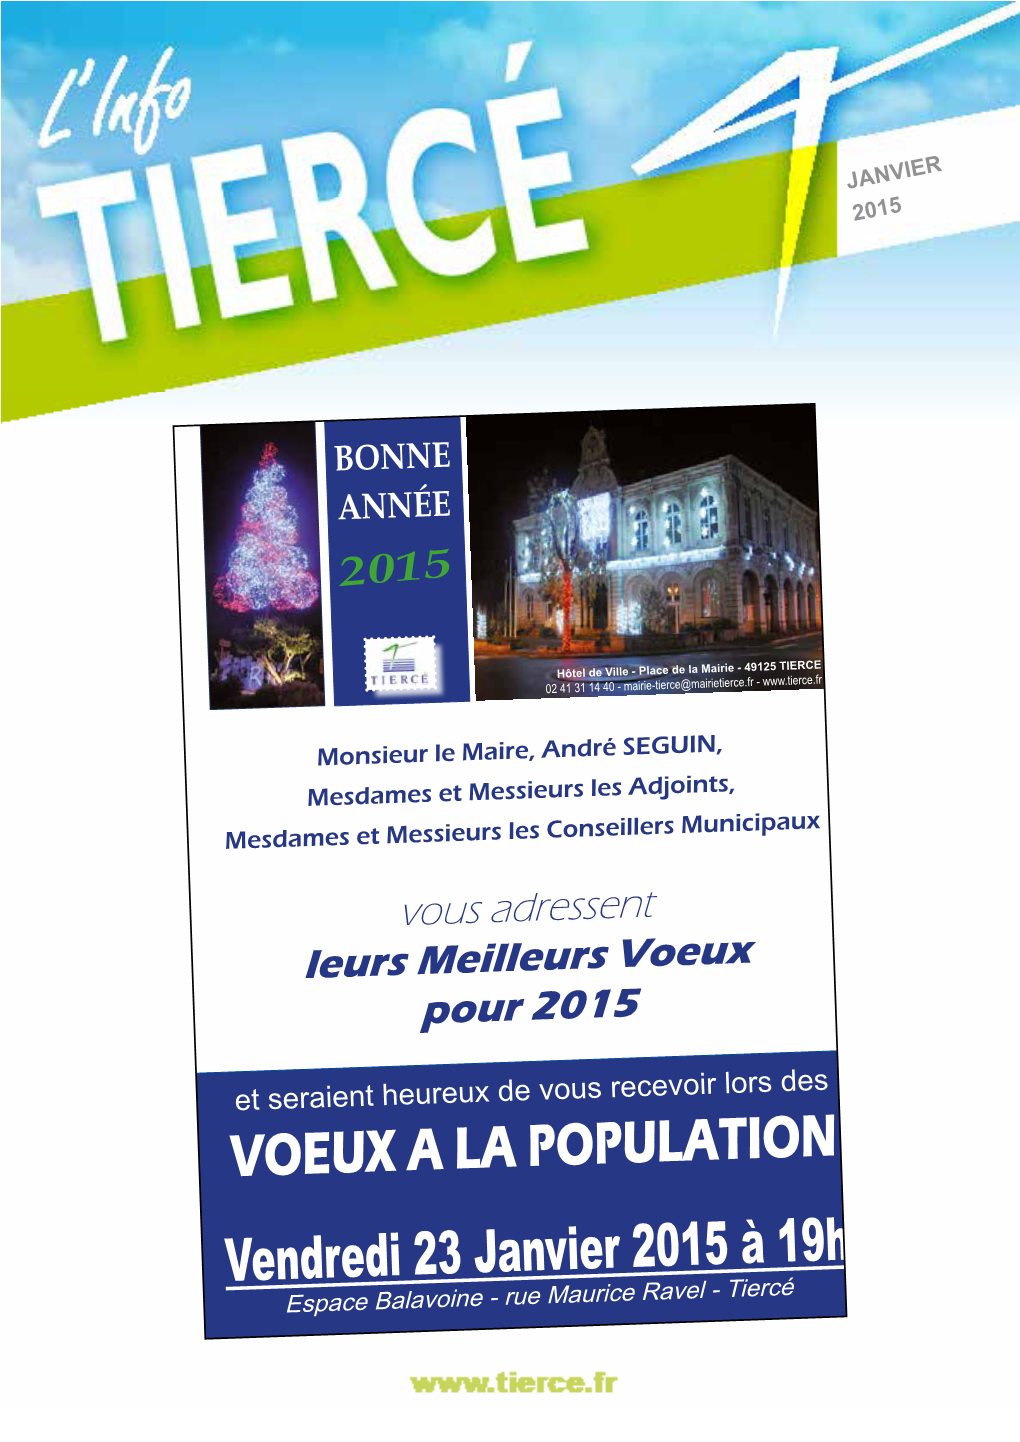 VOEUX a LA POPULATION Vendredi 23 Janvier 2015 À 19H Espace Balavoine - Rue Maurice Ravel - Tiercé